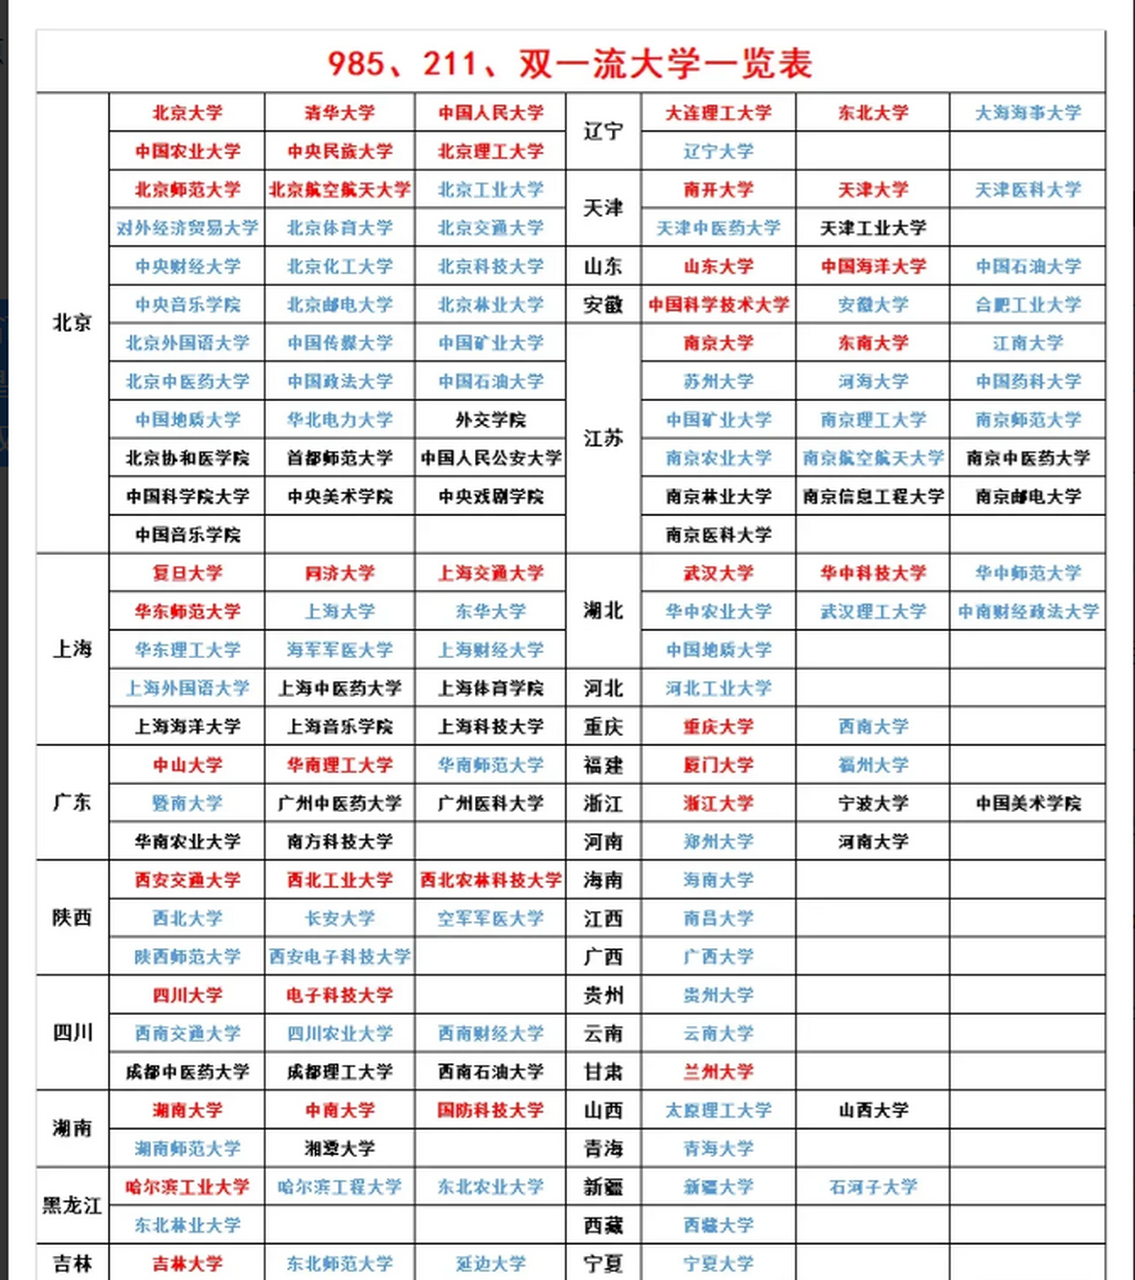 985/211/双一流大学各省市分布北京是最大的赢家,首都嘛,理应如此